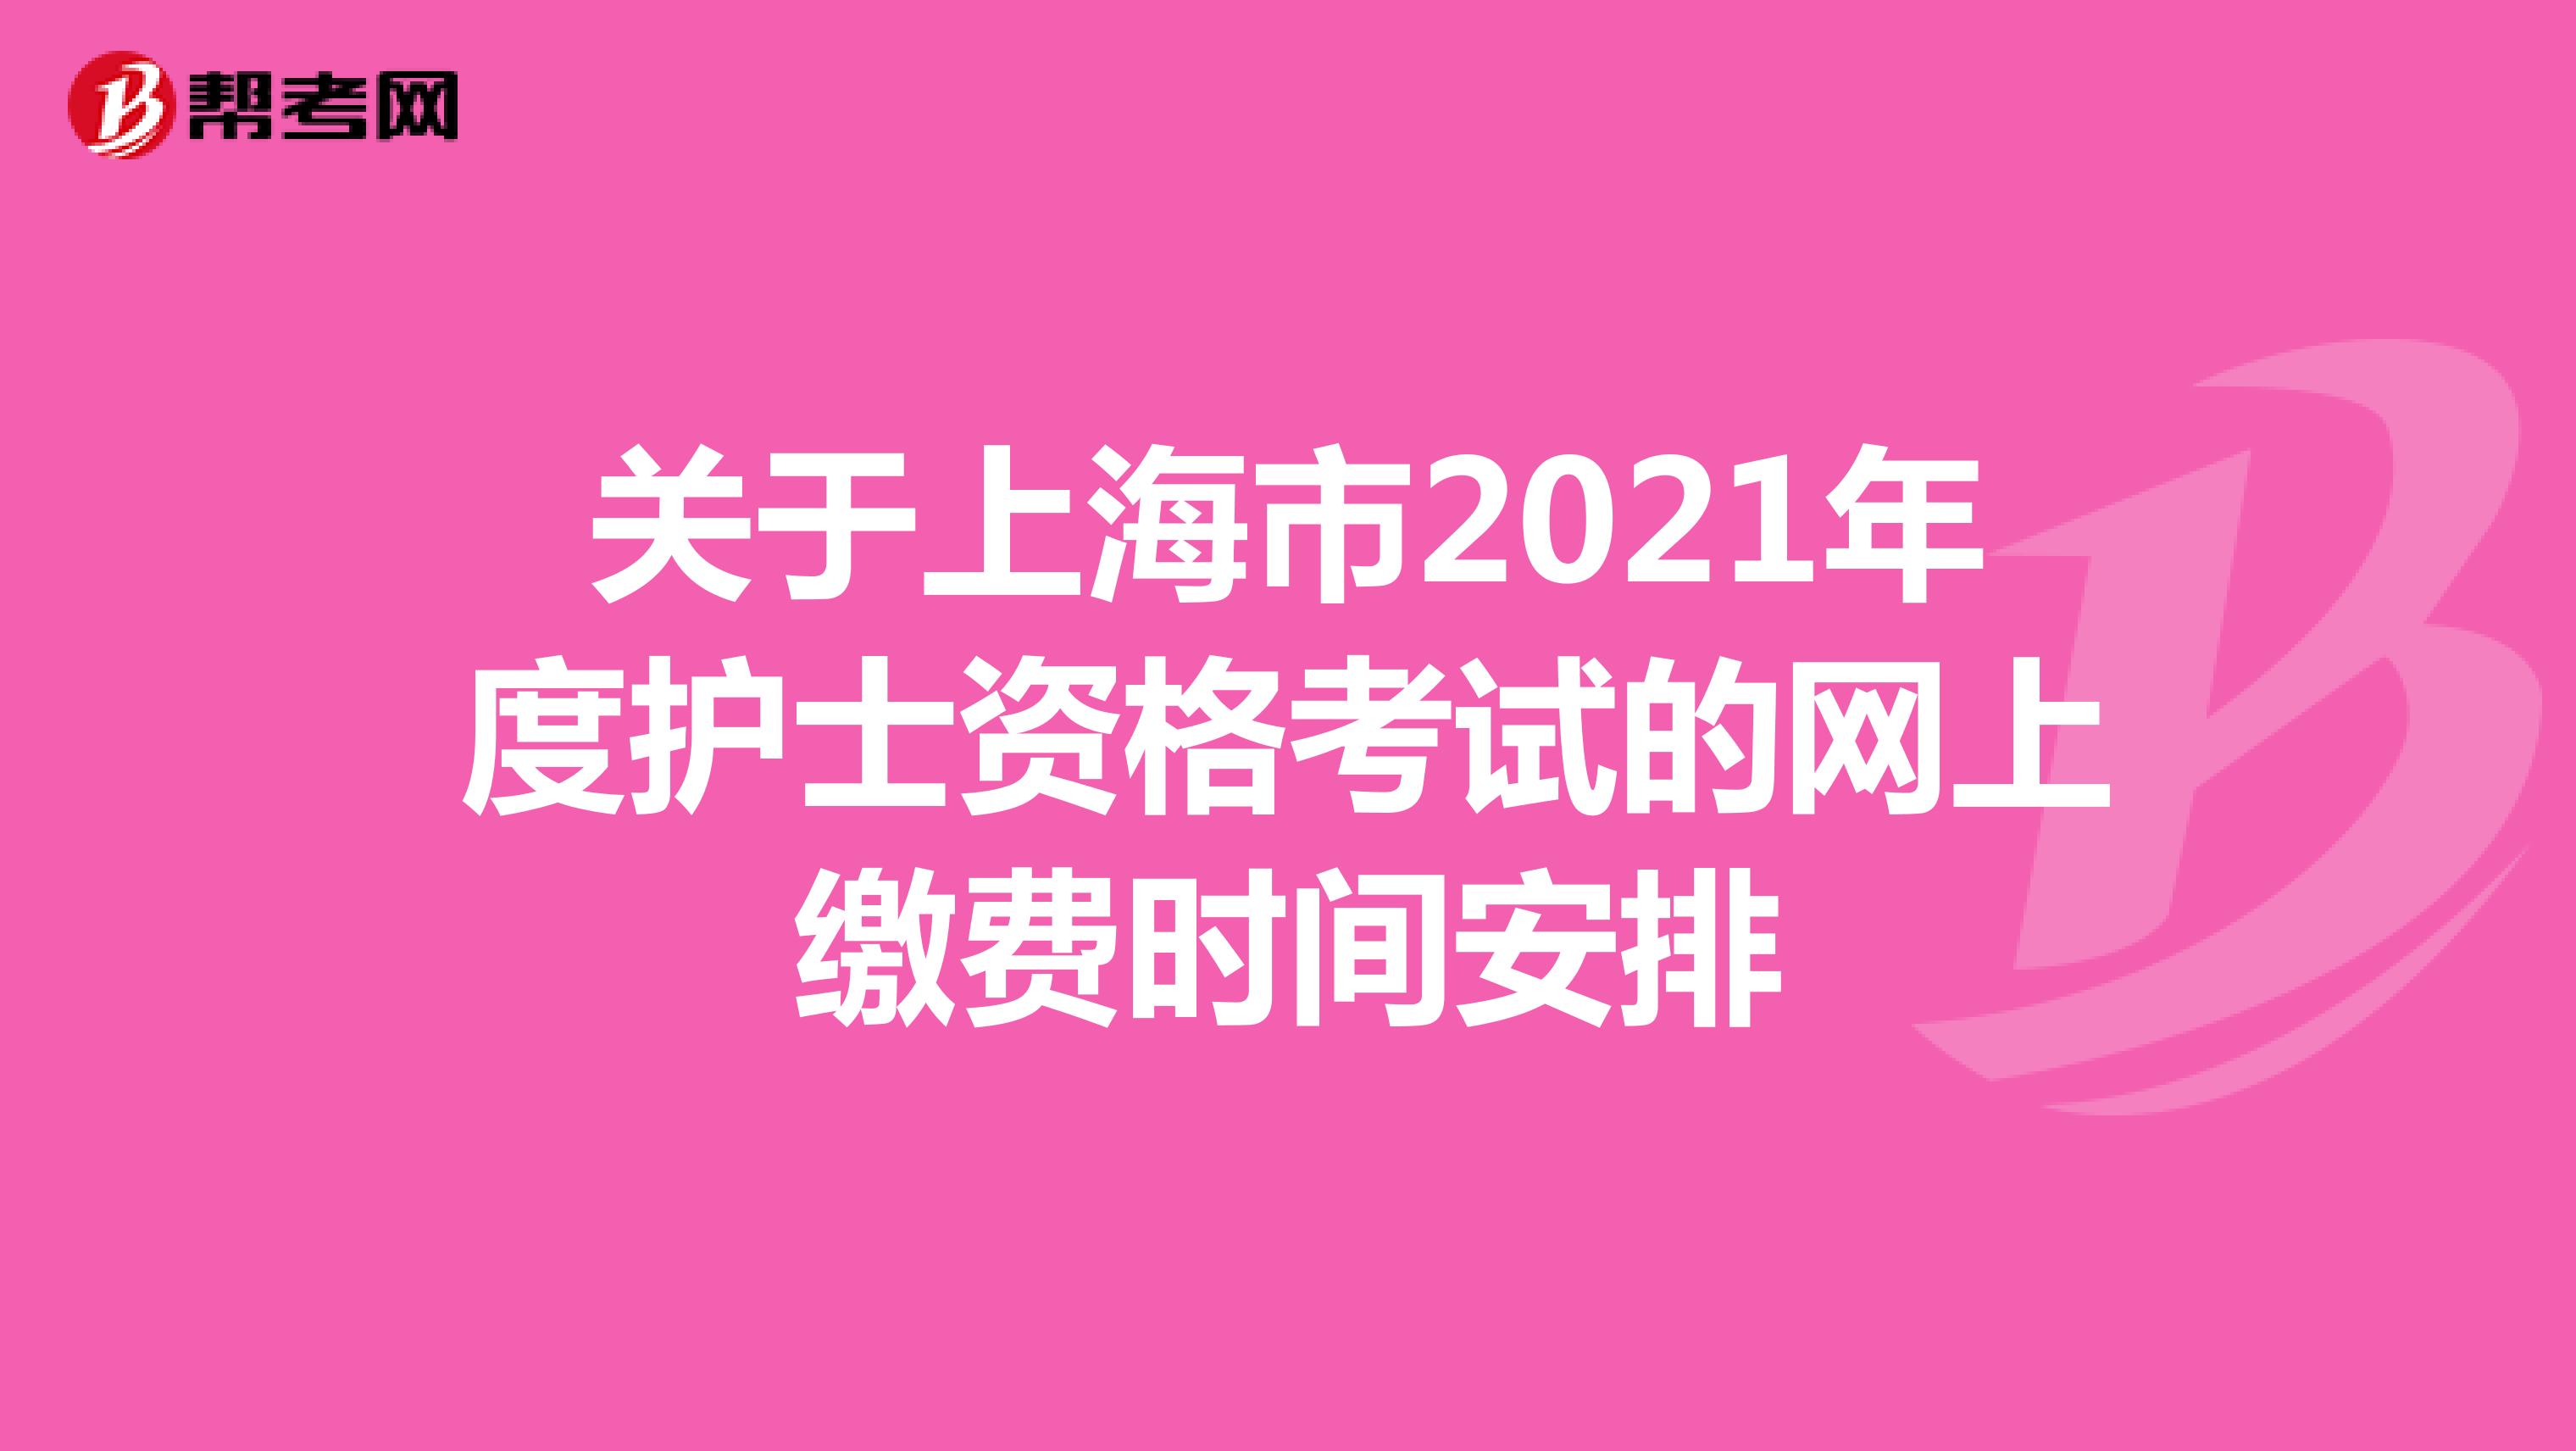 关于上海市2021年度护士资格考试的网上缴费时间安排